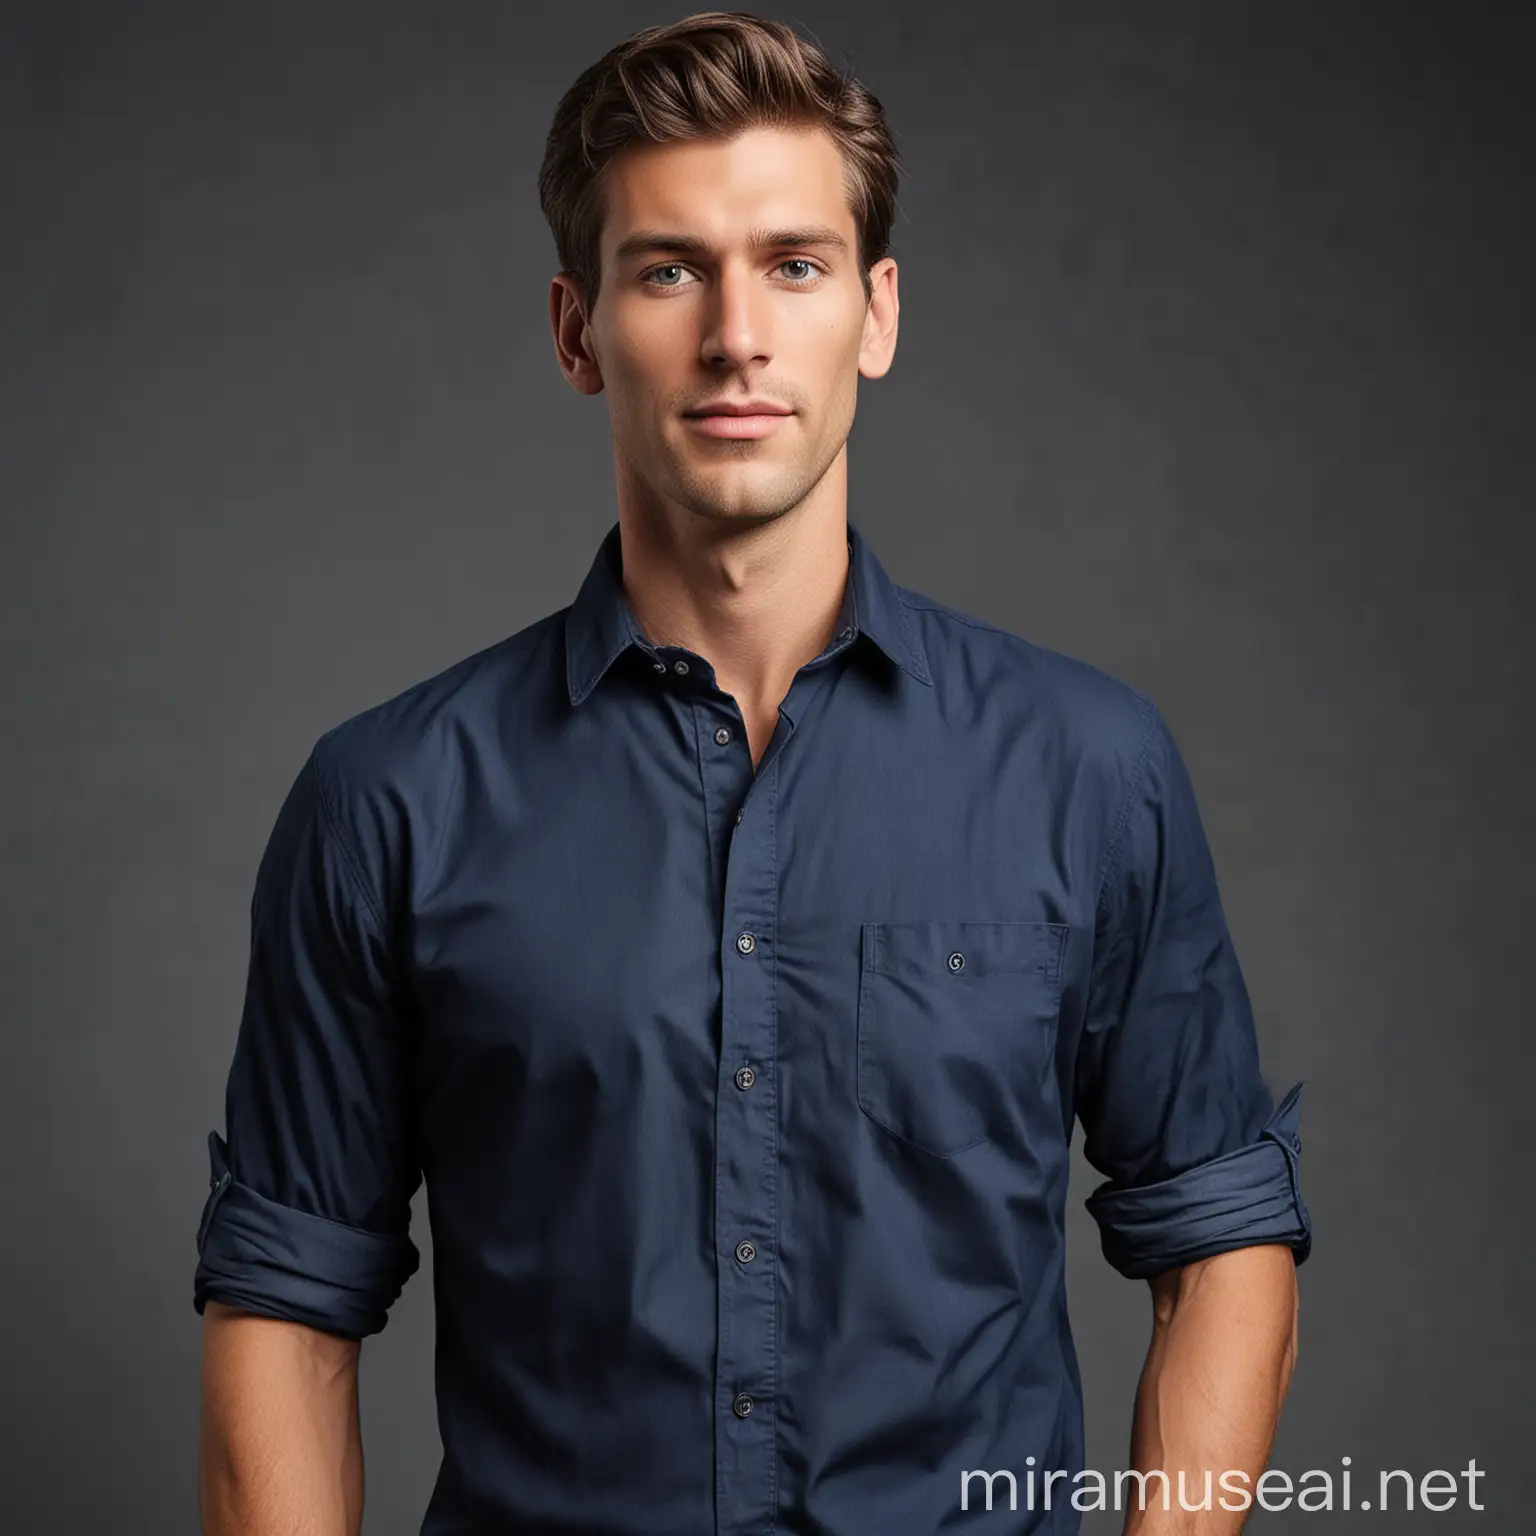 handsome tall man, wearing a blue navy shirt